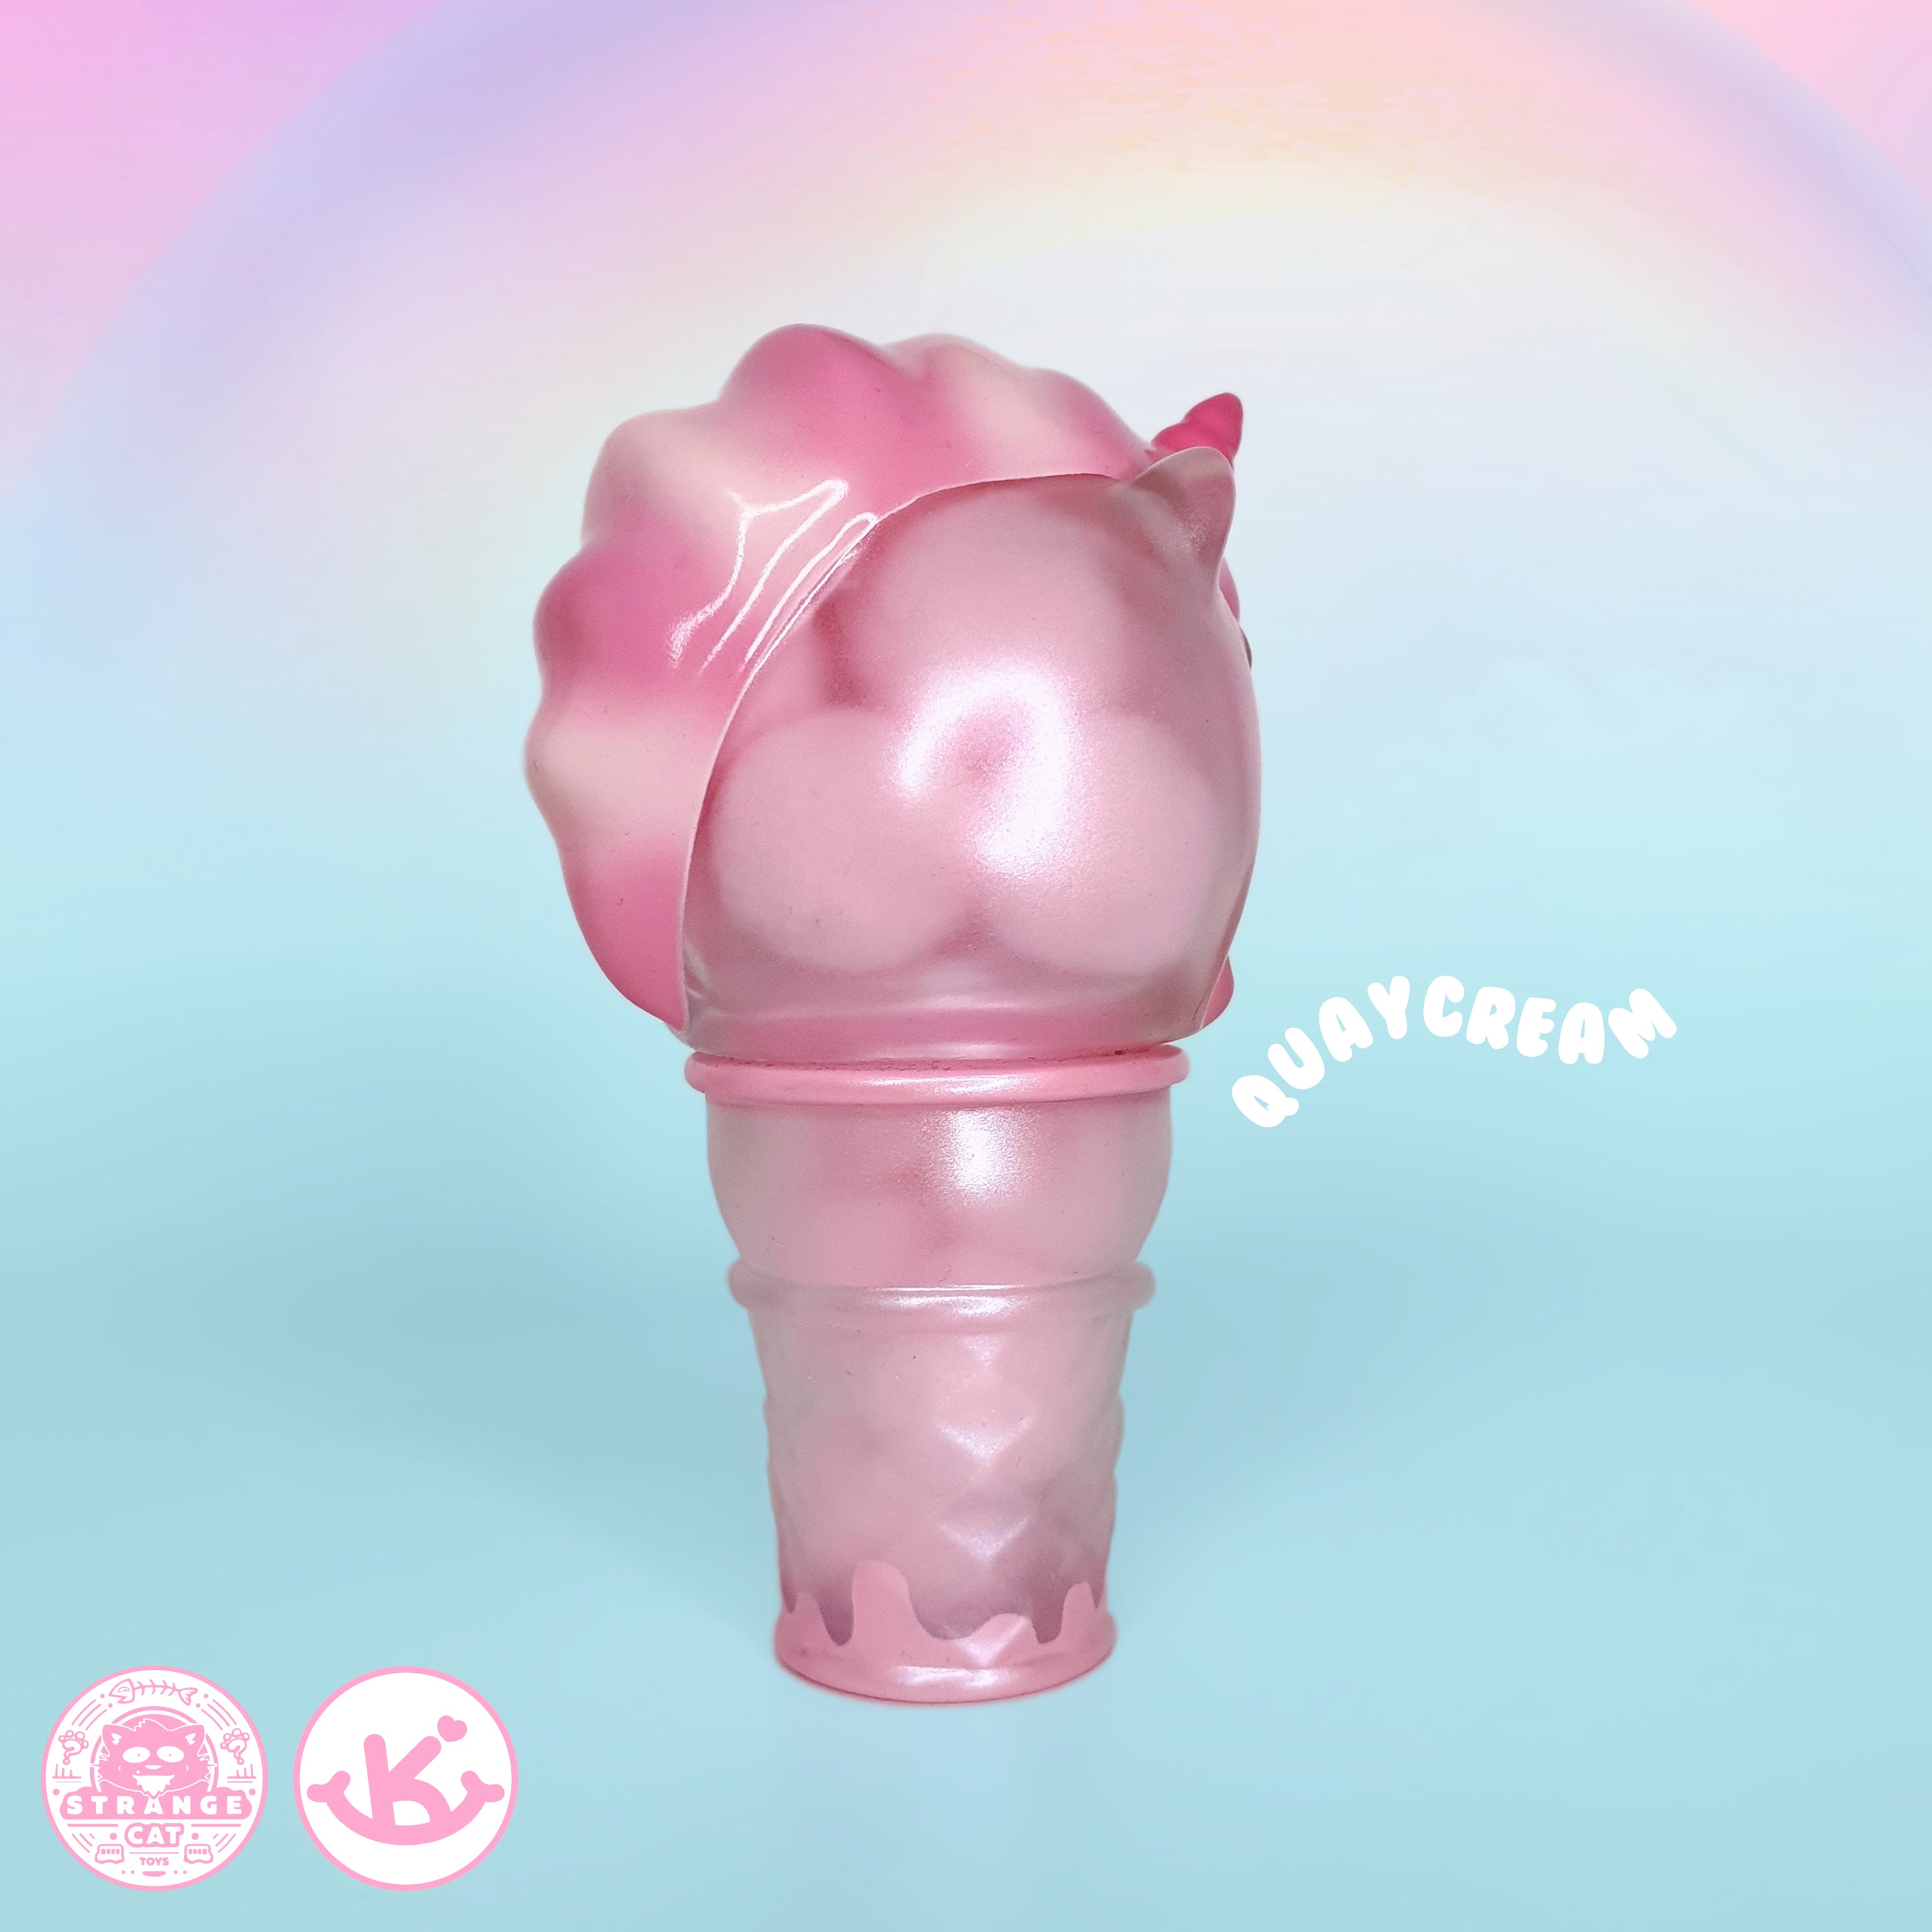 QuayCream - Cotton Candy Edition by KiK